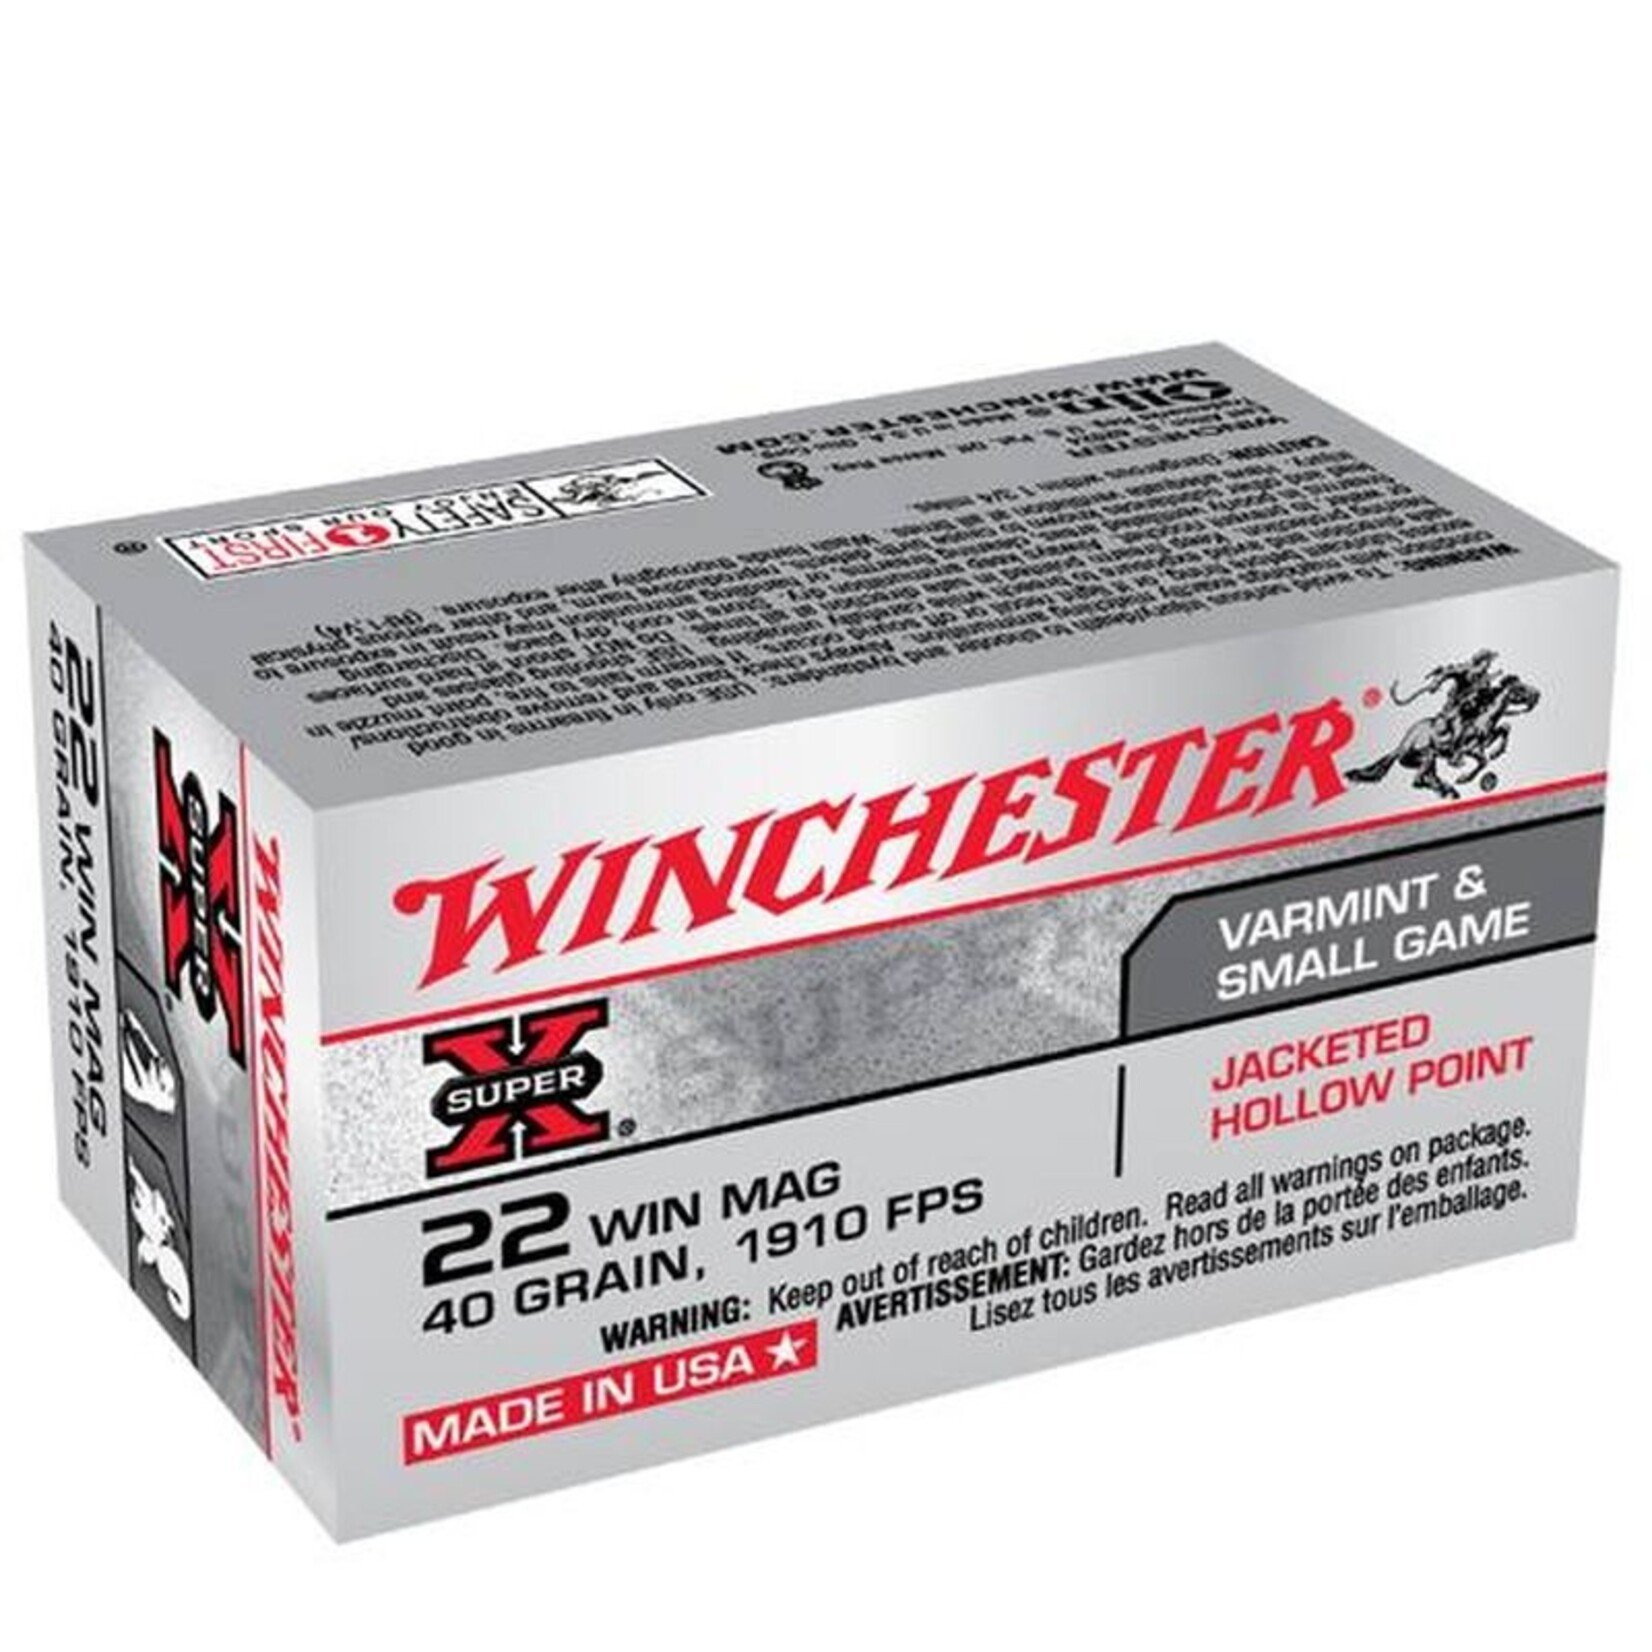 Winchester Winchester Super-X 22 wmr 40 gr JHP 1910 fps 50 rnds